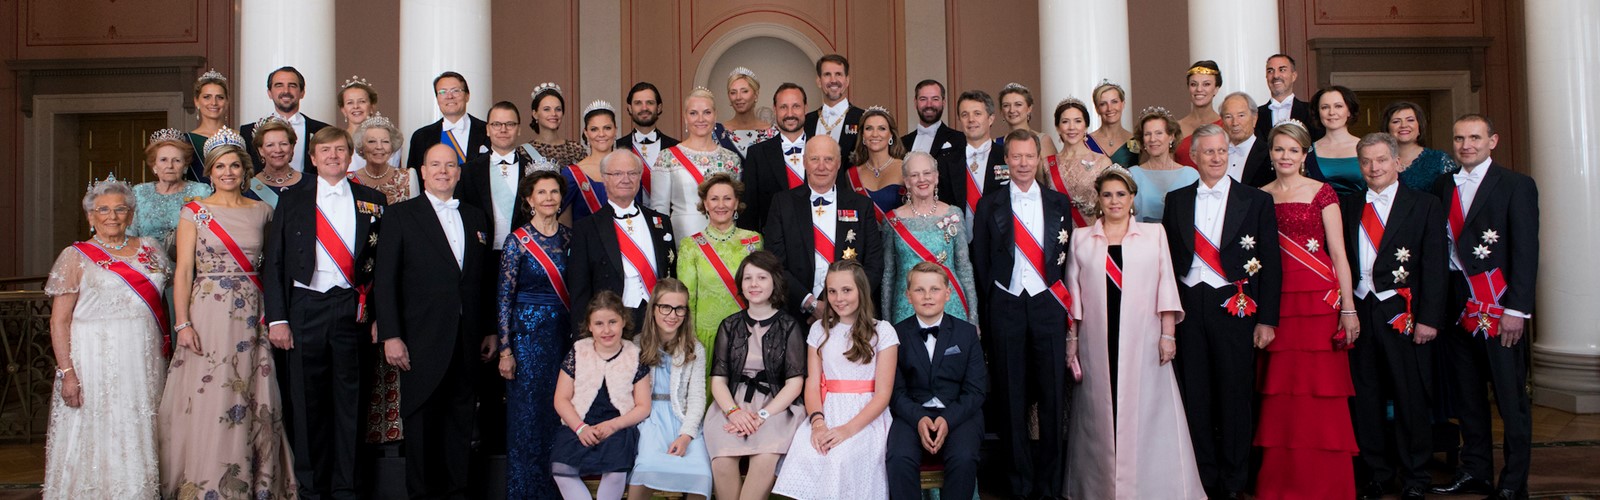 Group Photo Royal Family Thomas Brun NTB Scanpix